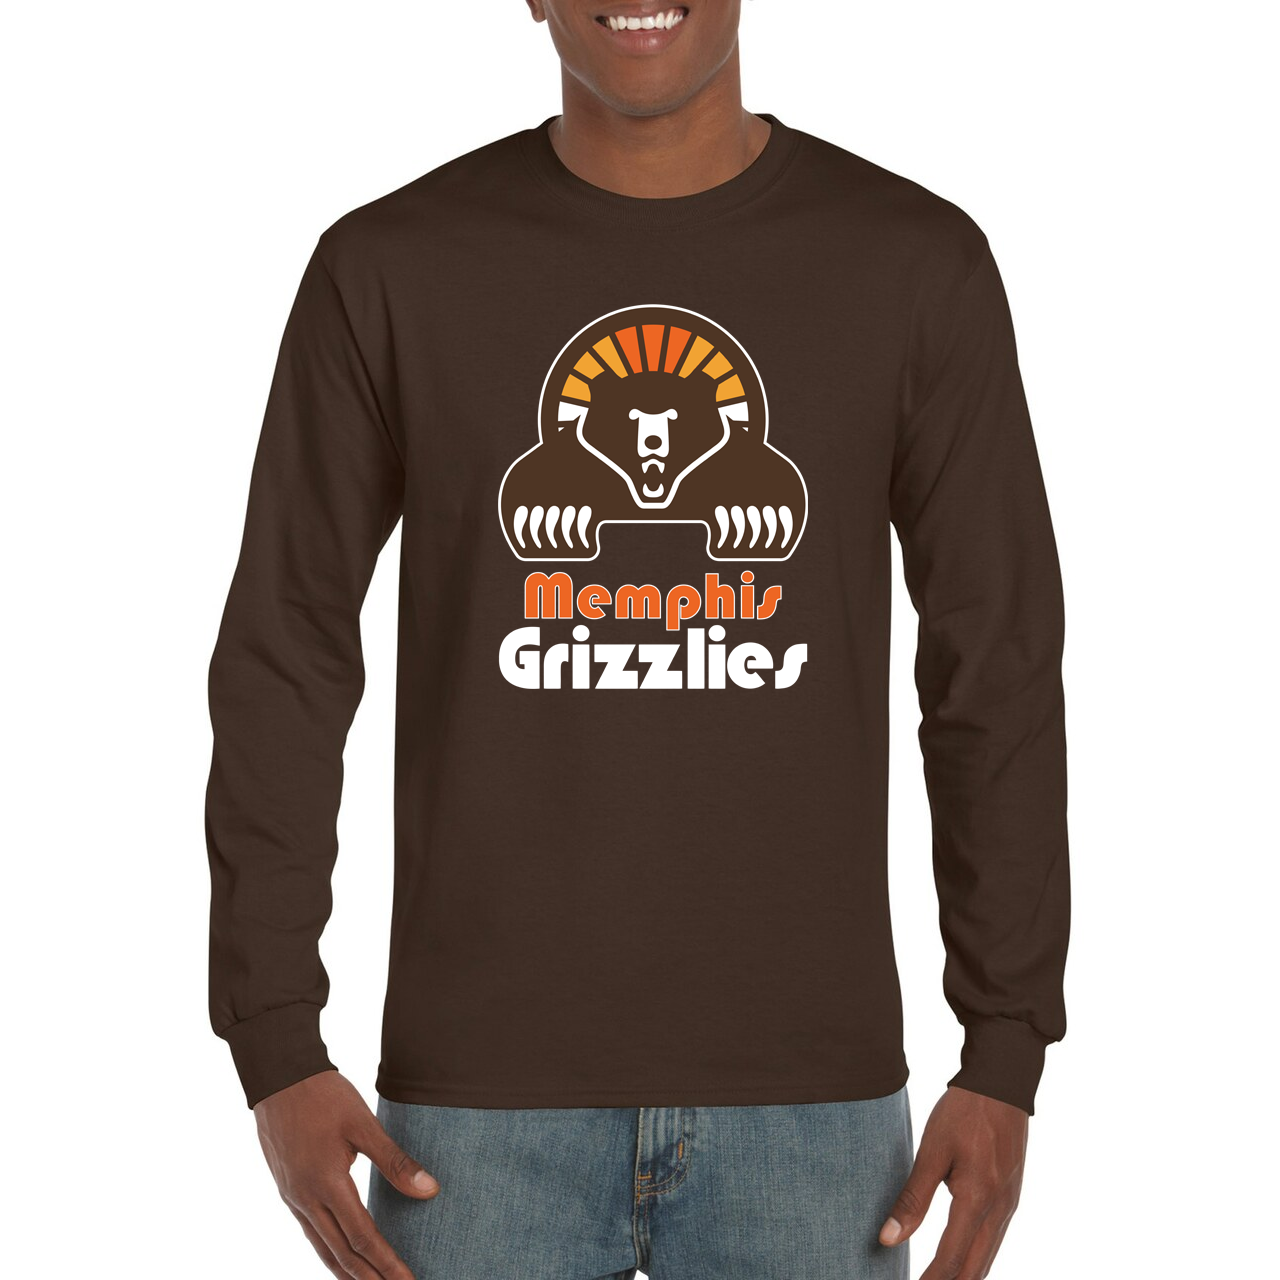 Memphis Grizzlies Long Sleeve T-Shirt